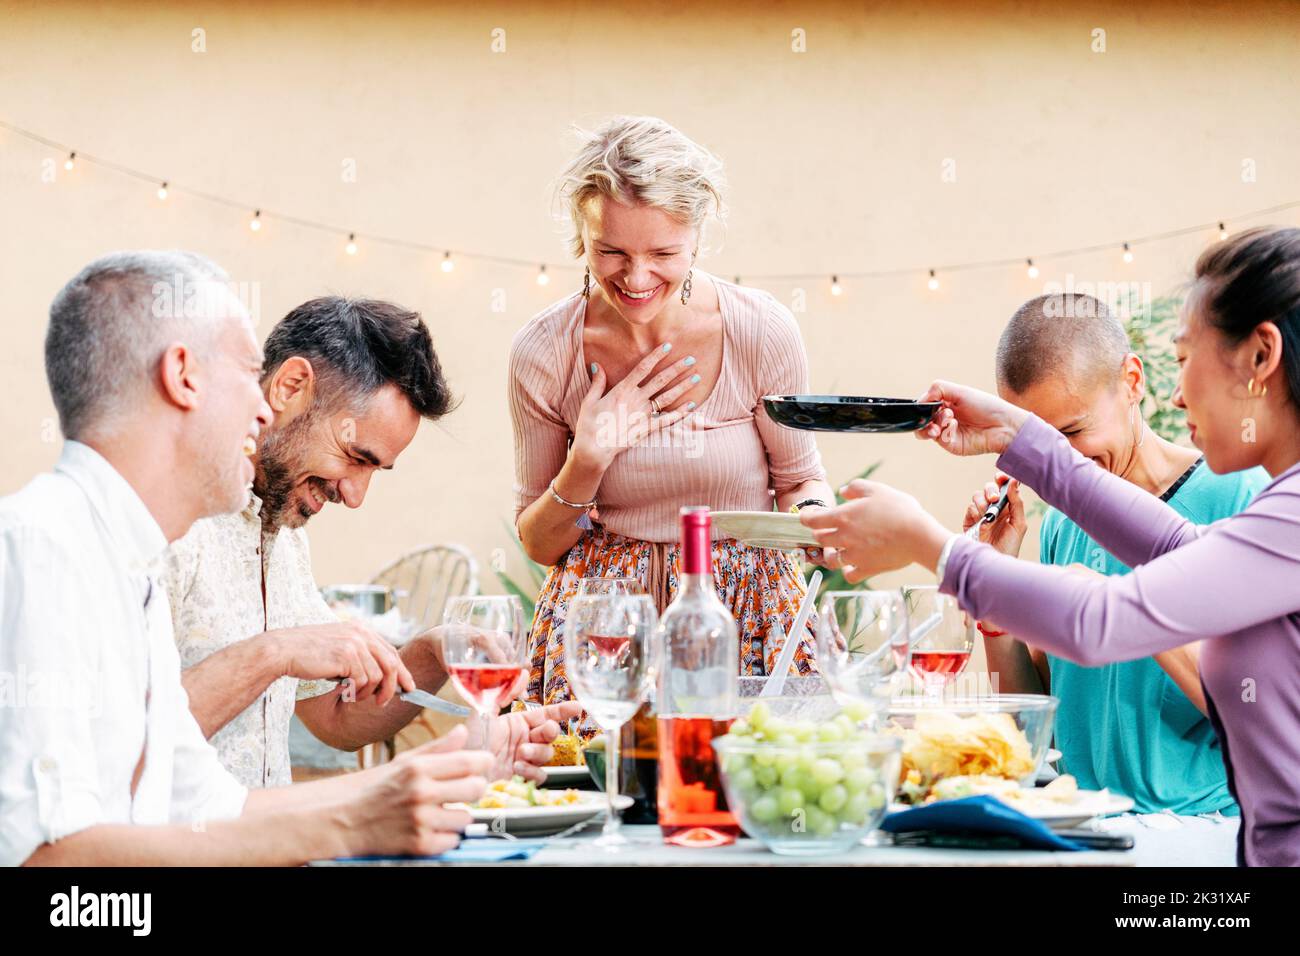 Eine Gruppe erwachsener Freunde, die sich bei einer Grillparty mit viel Essen und Getränken am Tisch treffen. Lifestyle-Konzept. Stockfoto